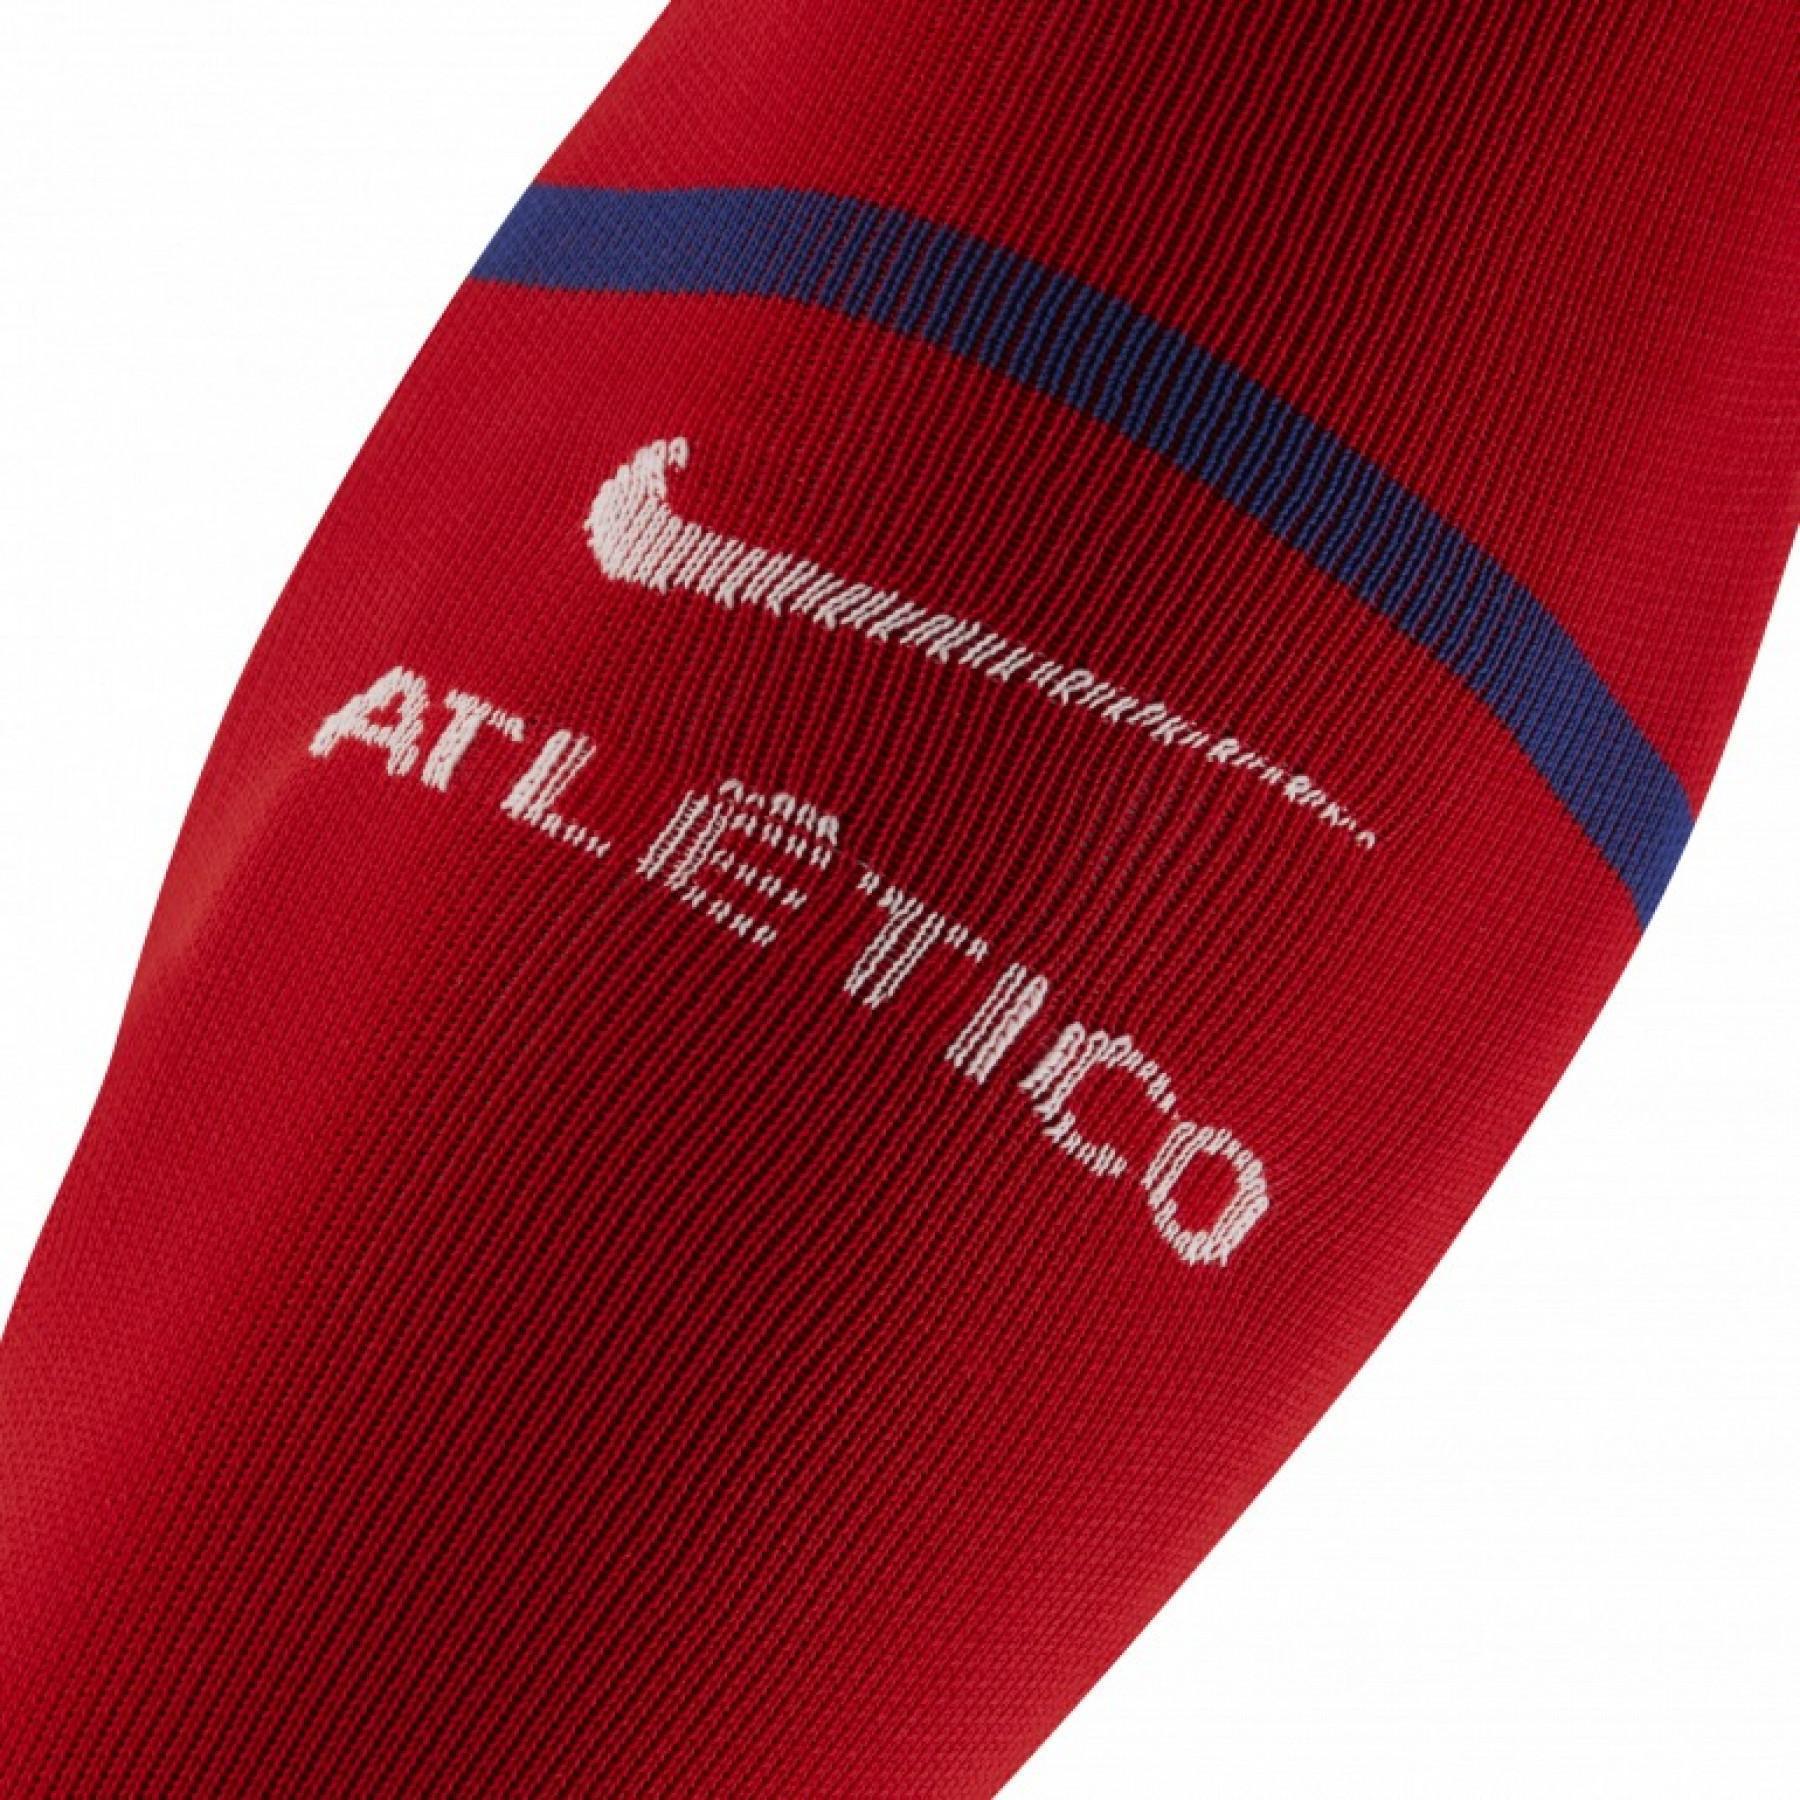 Socks Atlético Madrid 2019/20